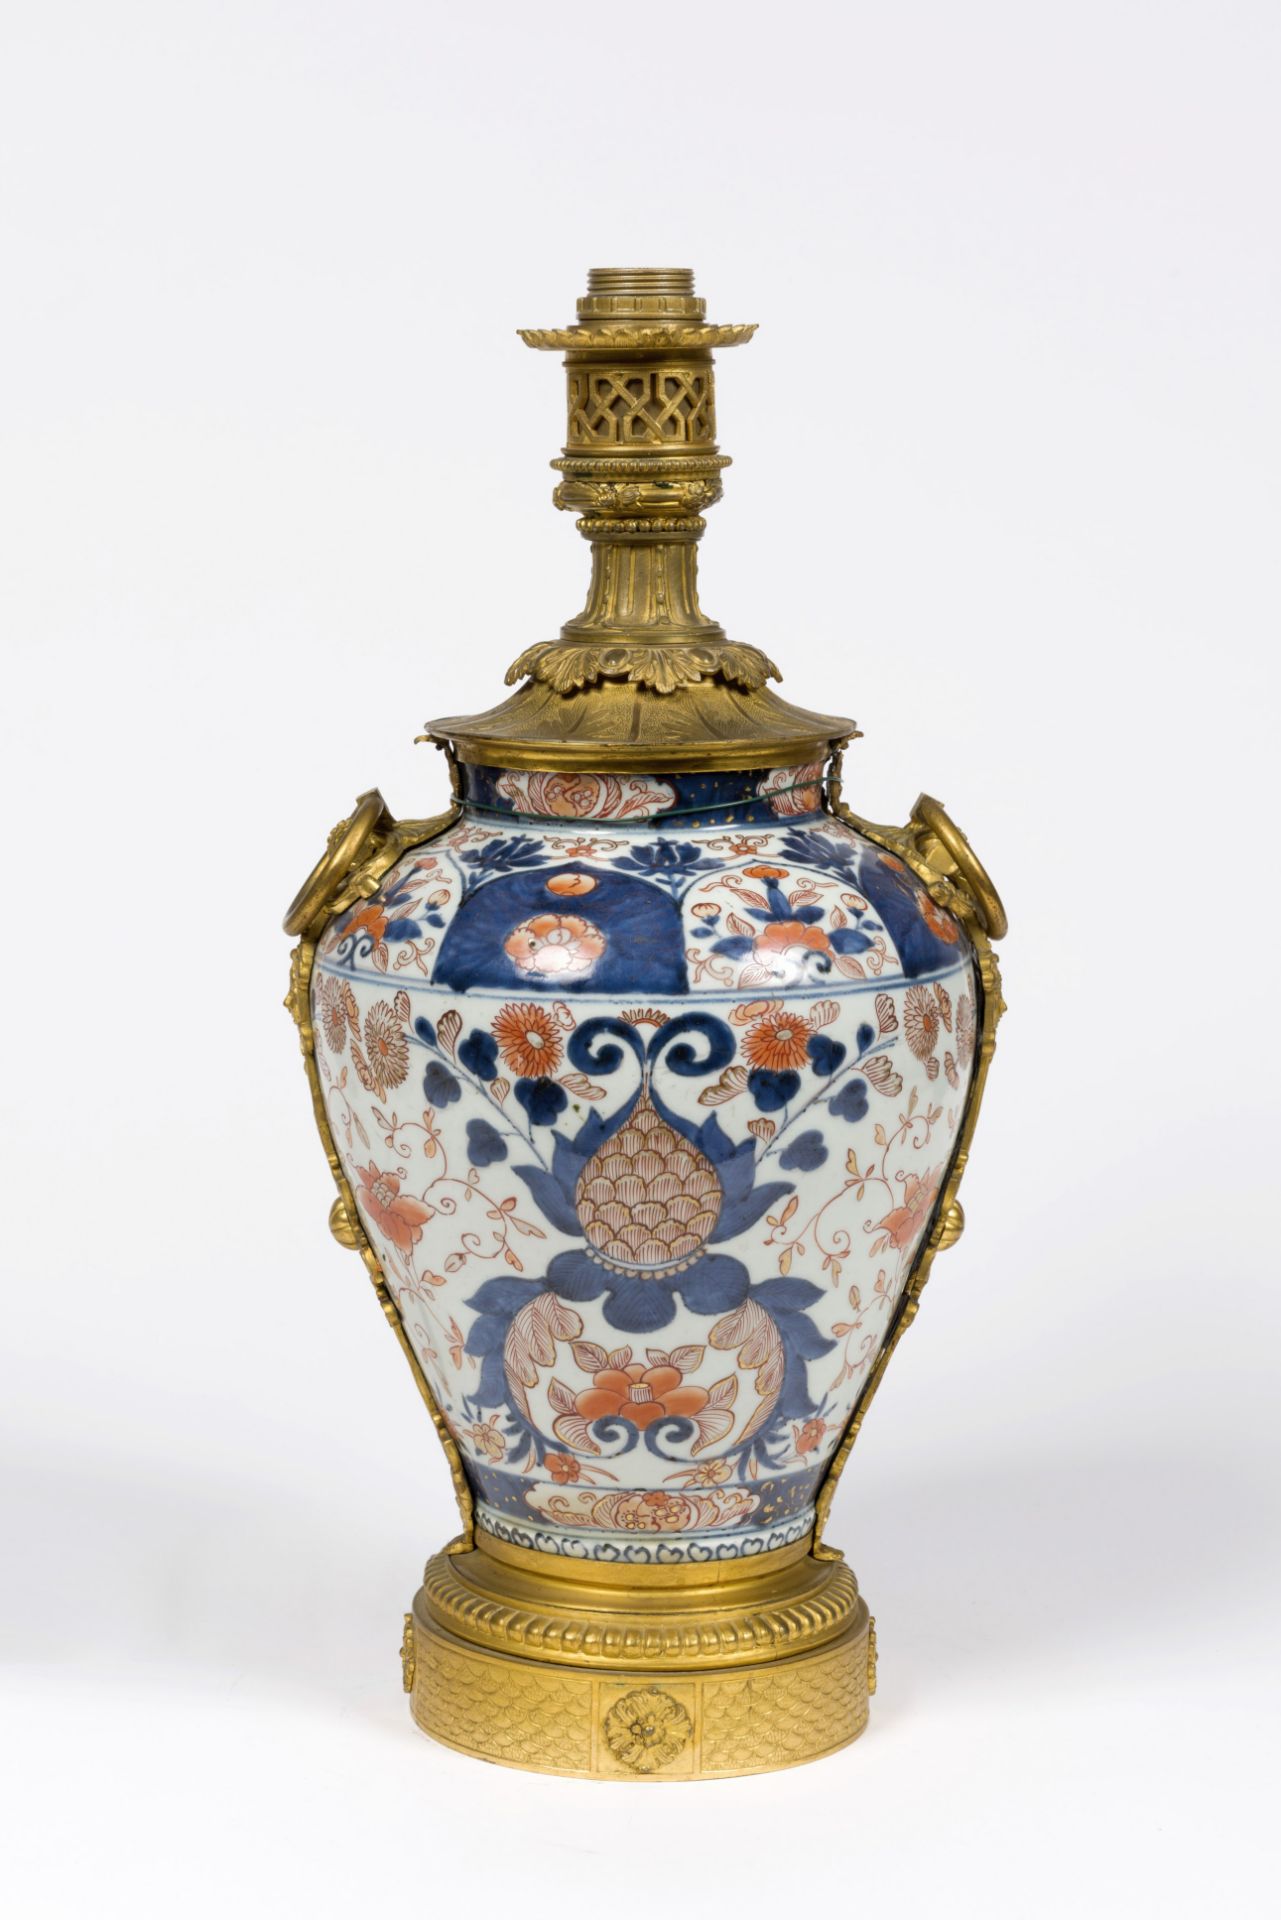 JAPON. Vase balustre en porcelaine. Epoque Edo, 18e si&#232;cle